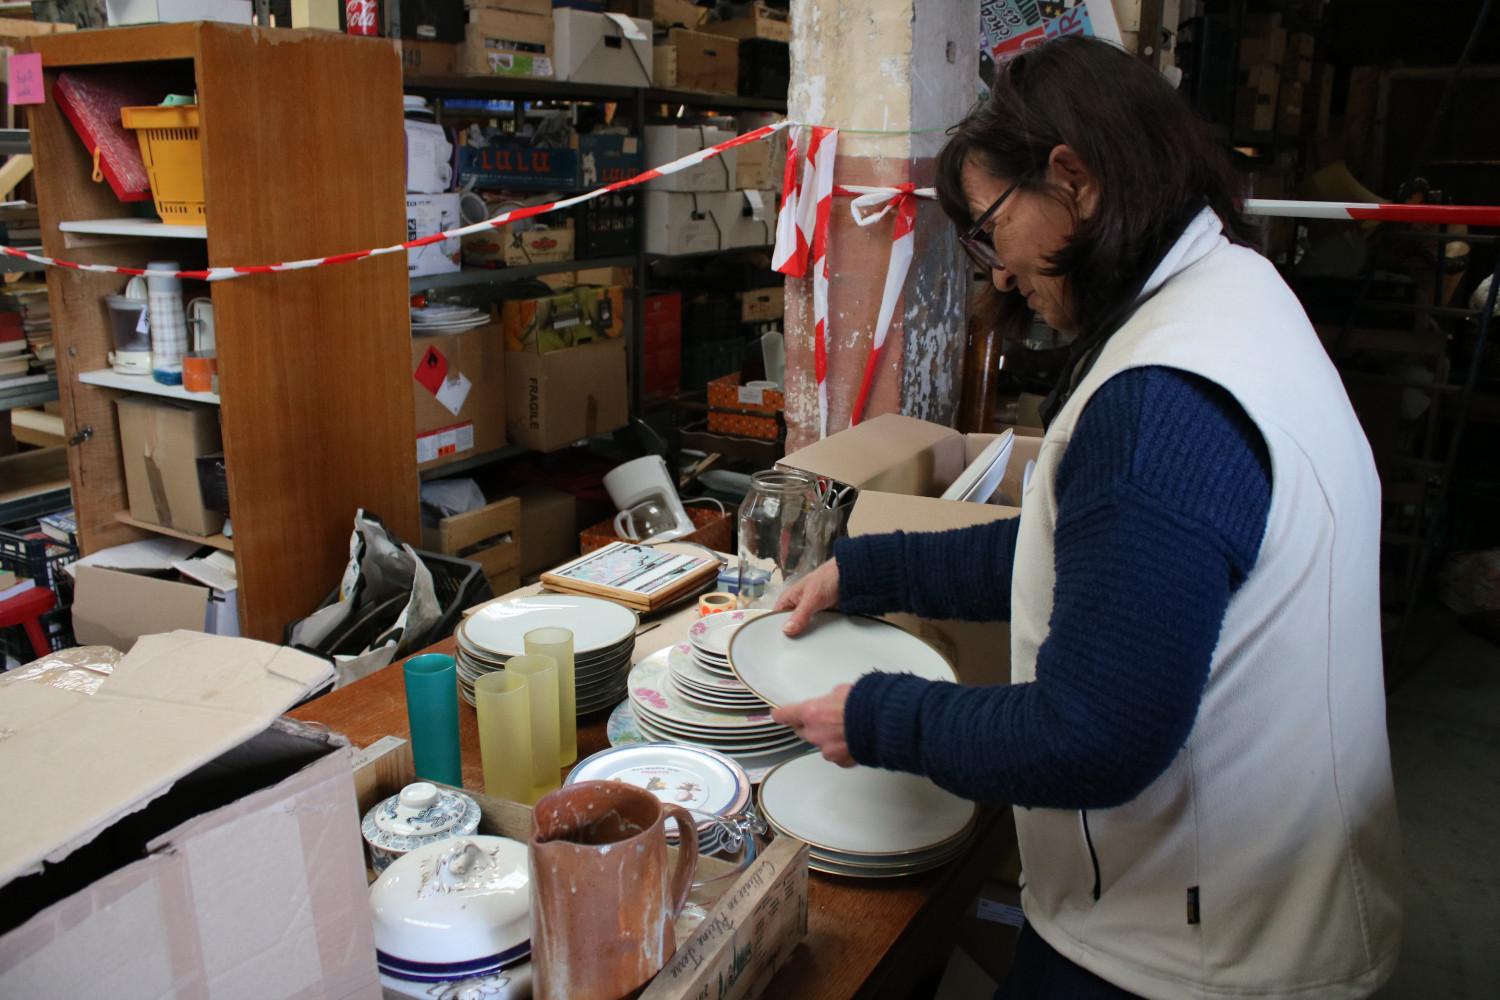 Brigitte, une bénévole, est chargée du rayon vaisselle. Elle trie des assiettes et jette celles qui sont cassées. Les autres seront mises en rayon © Anouk PASSELAC / Globe Reporters